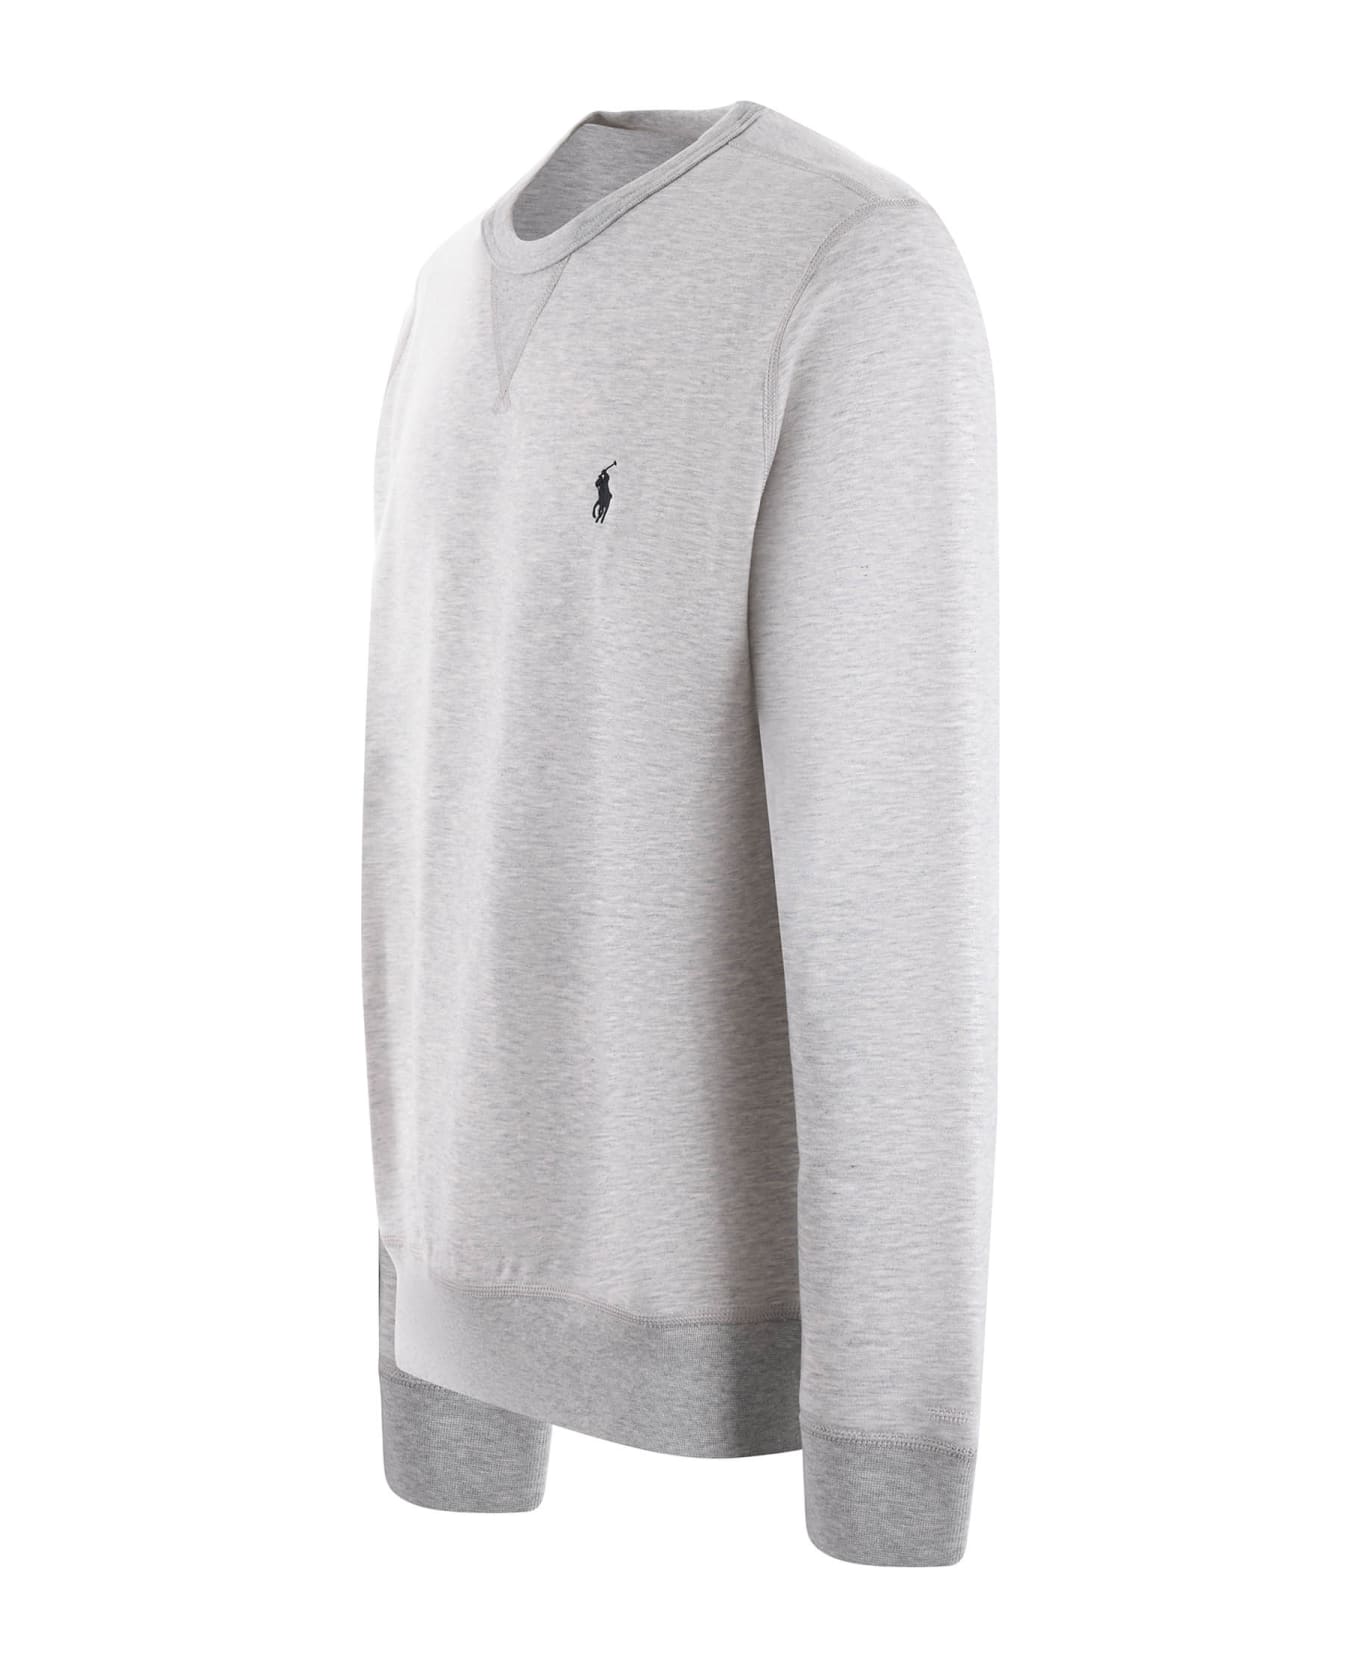 Polo Ralph Lauren Sweatshirt - Grigio melange フリース